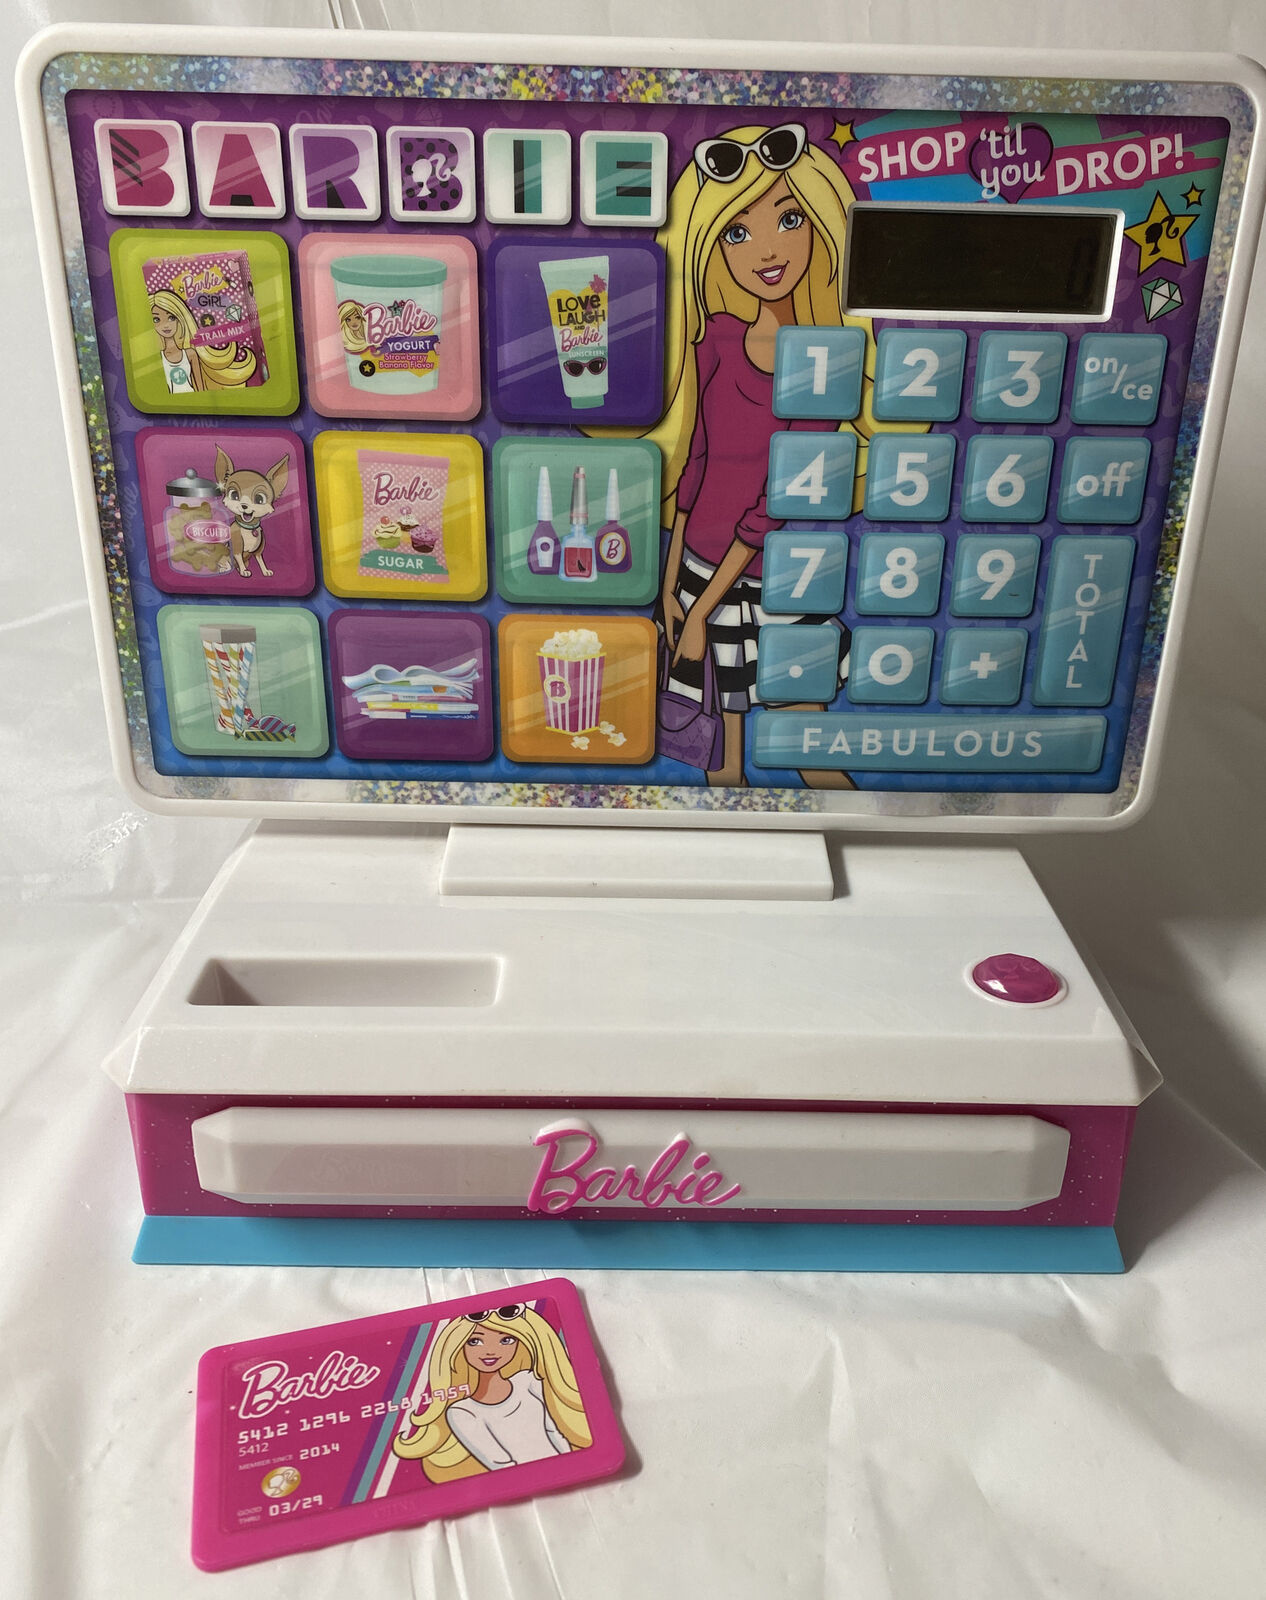 Large 9” Electronic Barbie Shop ‘til You Drop! Cash Register W/ Credit Card